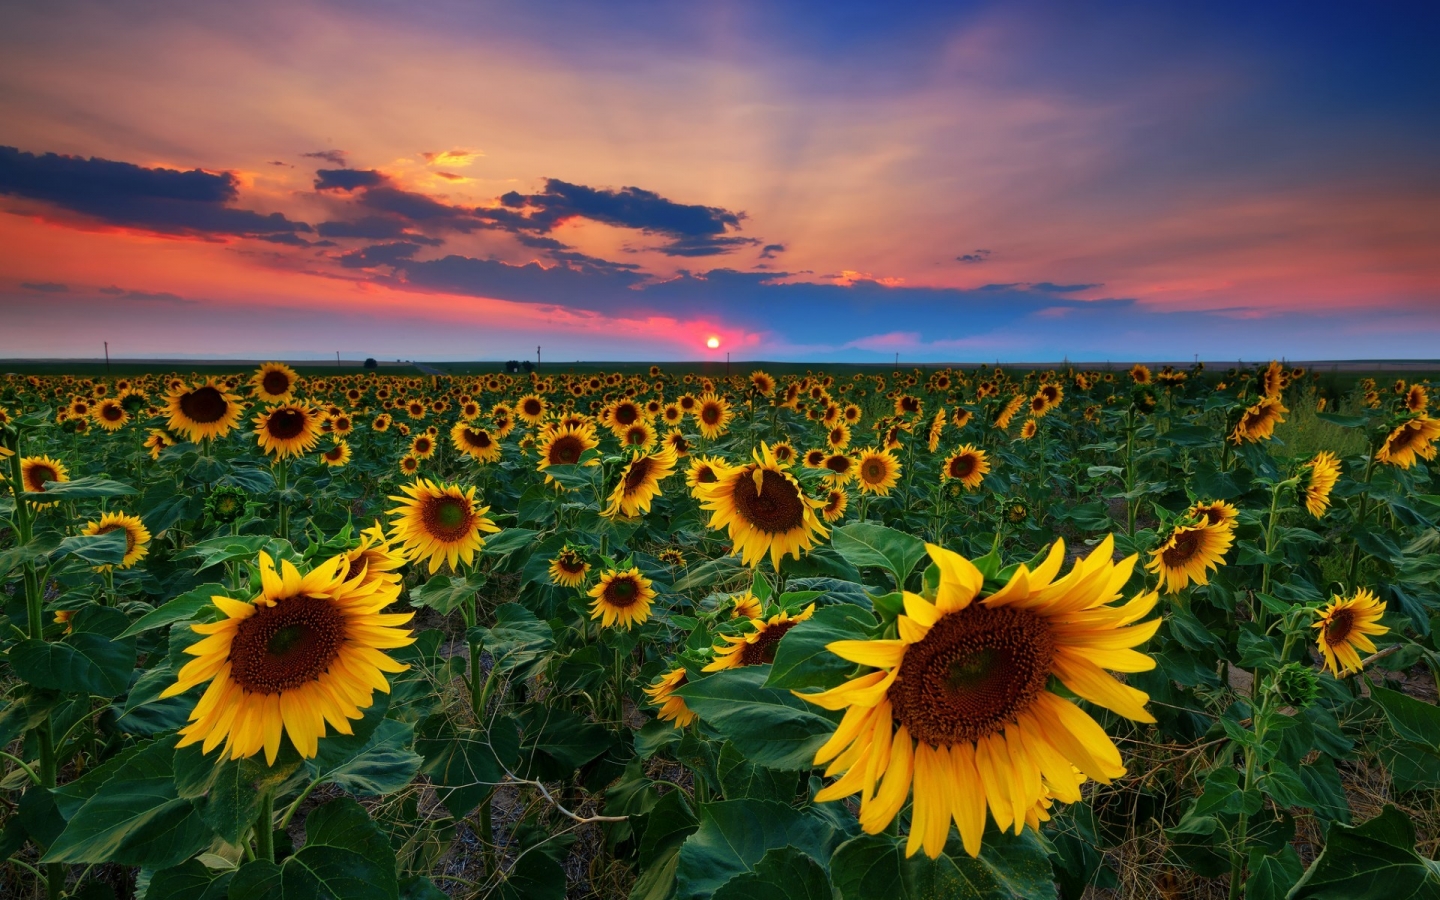 Denver Sunflowers Field for 1440 x 900 widescreen resolution